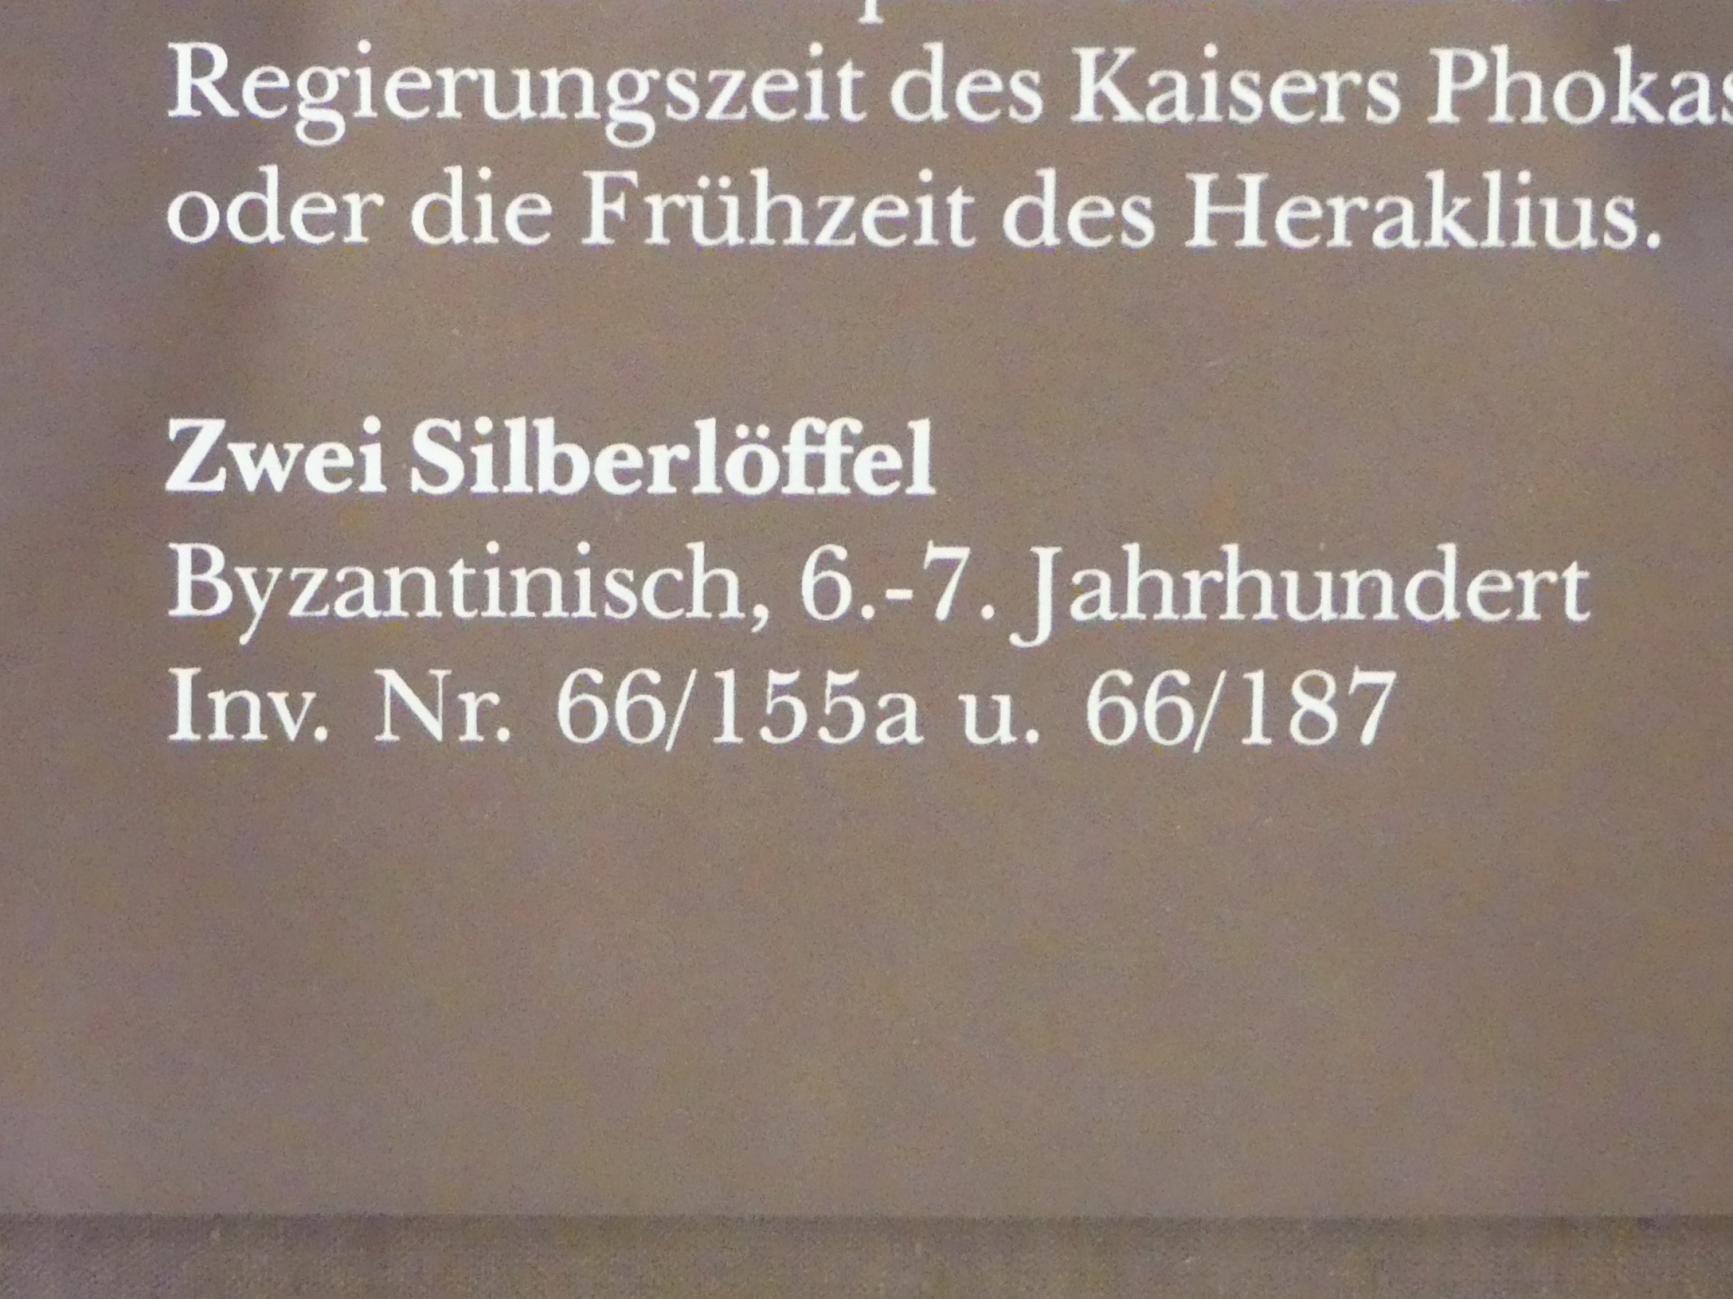 Zwei Silberlöffel, München, Bayerisches Nationalmuseum, Saal 1, 500–700, Bild 2/2